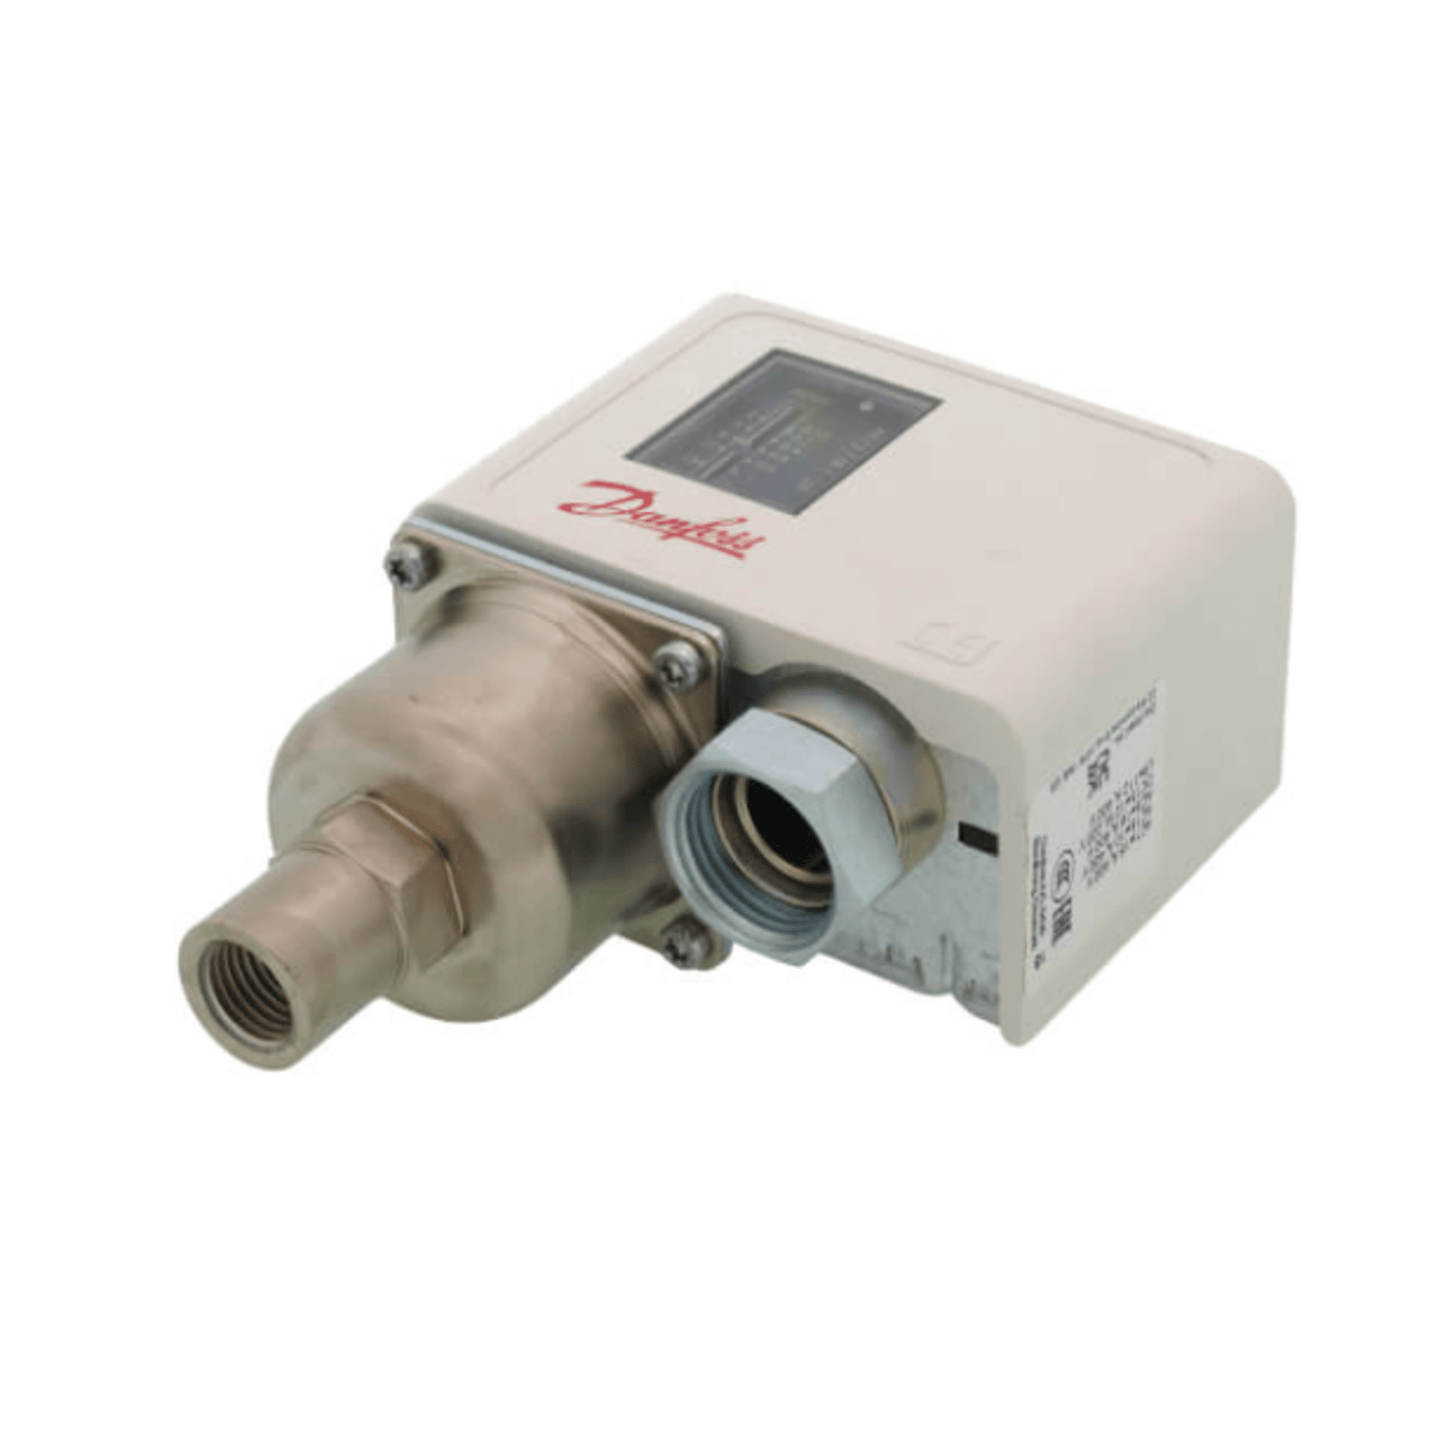 Danfoss - 060-214891 - KP-34 Manual Reset Pressure Switch